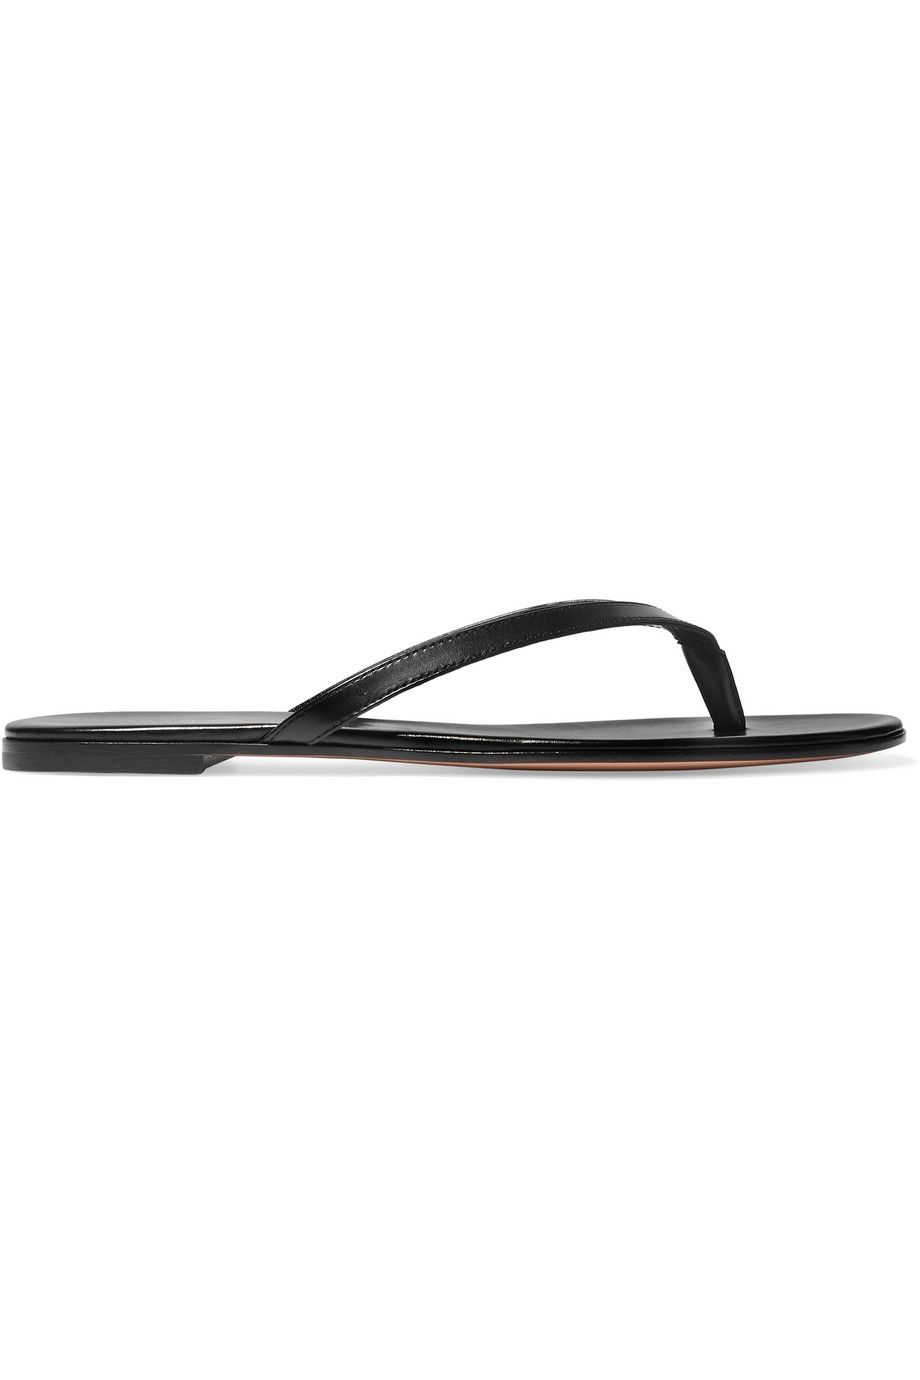 designer flip flops on sale